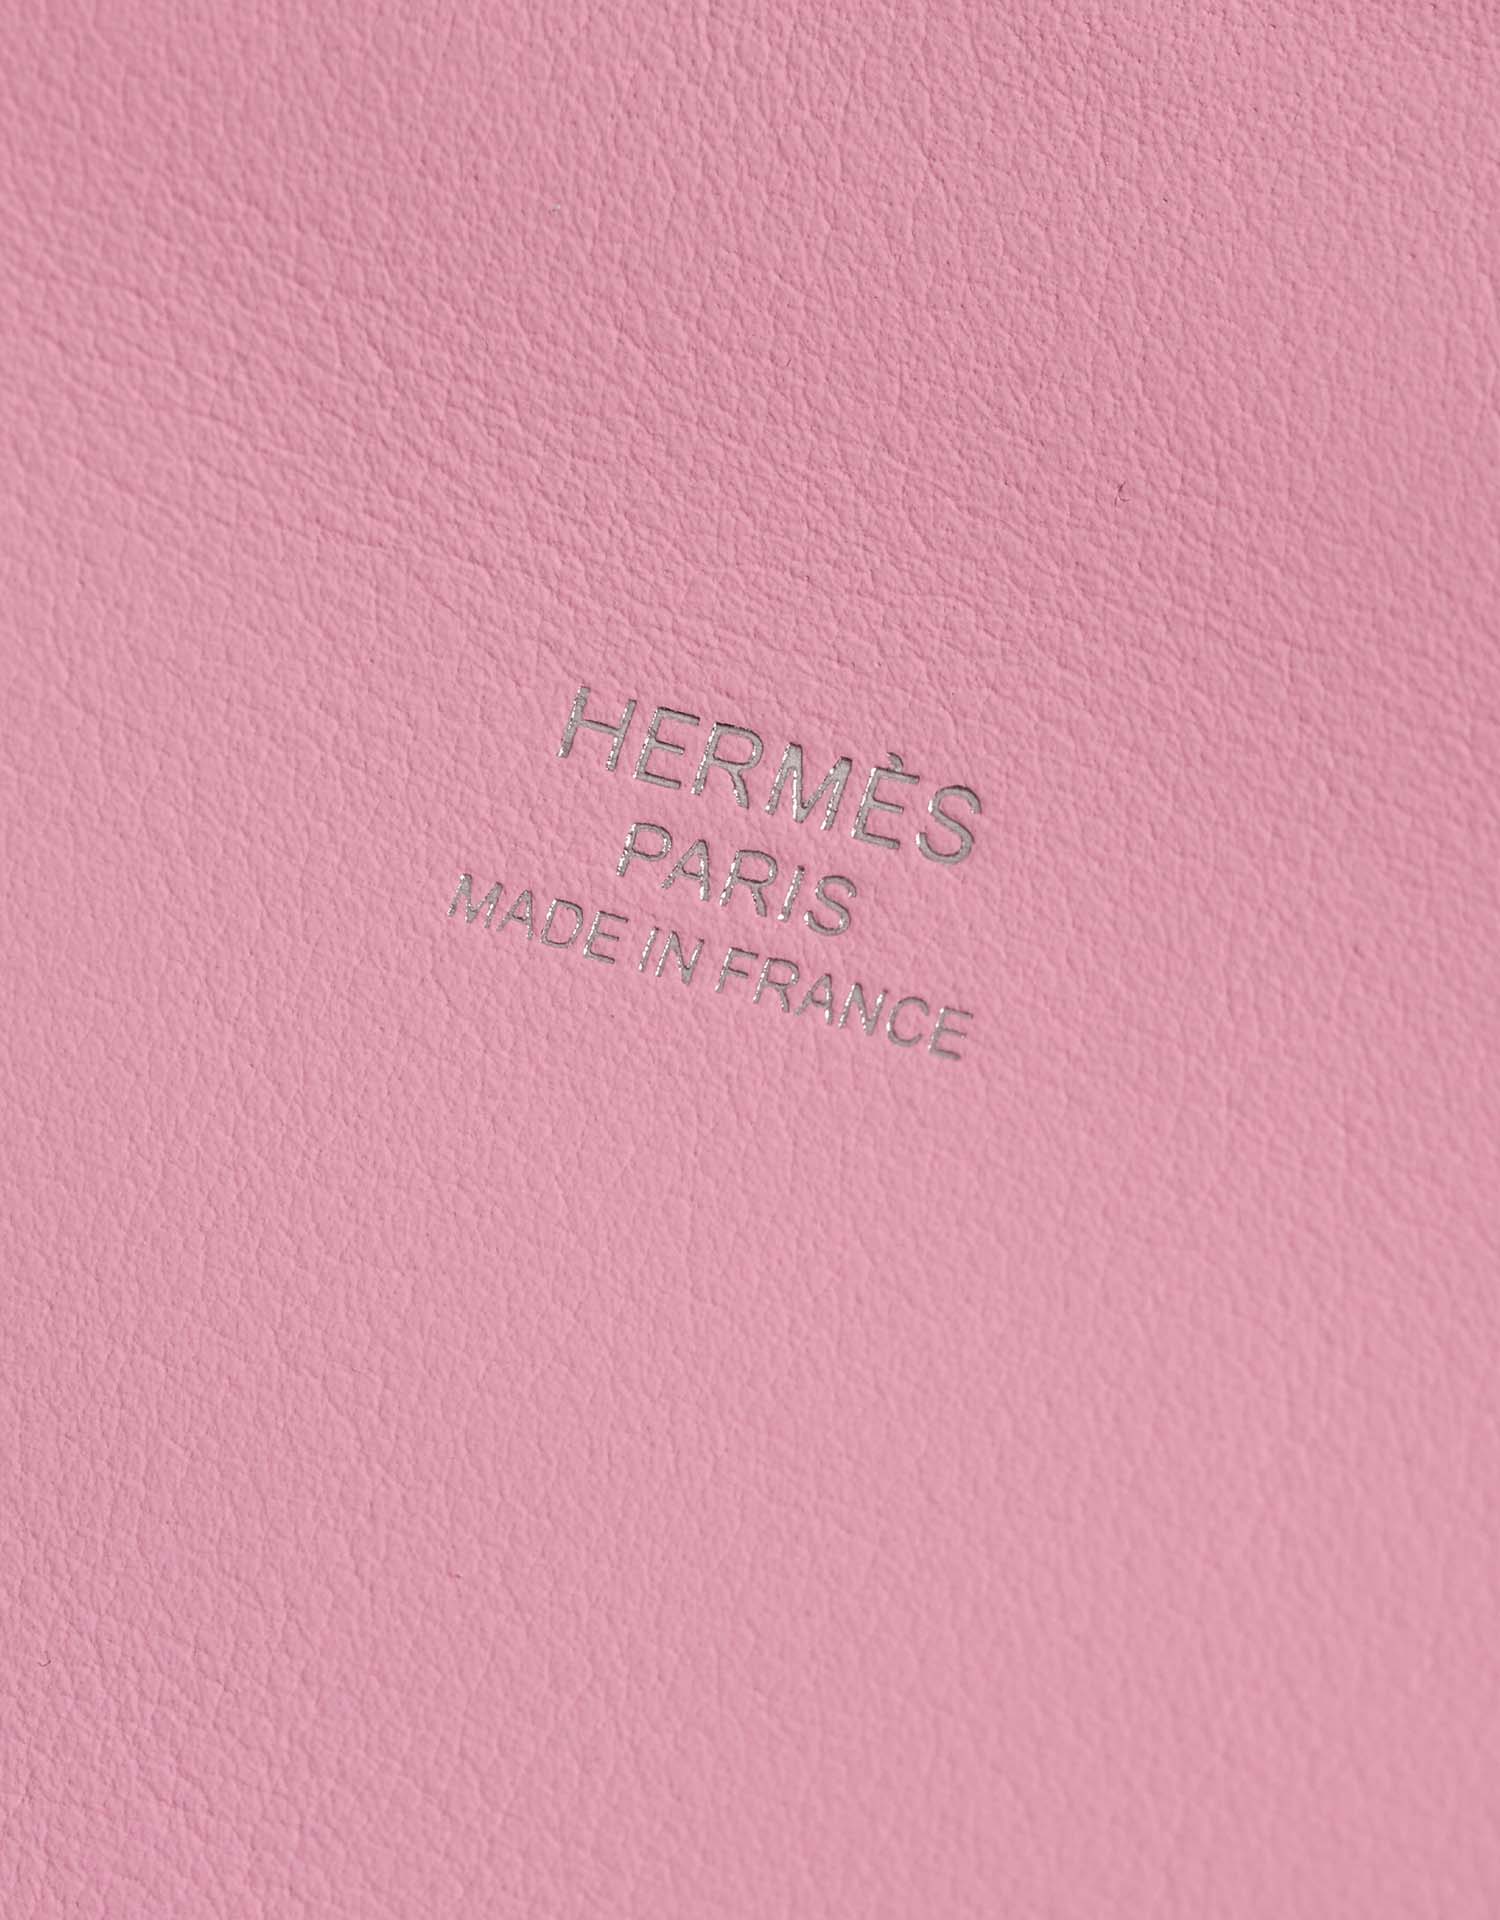 Hermès Bolide 25 MauveSylvestre Logo | Verkaufen Sie Ihre Designertasche auf Saclab.com